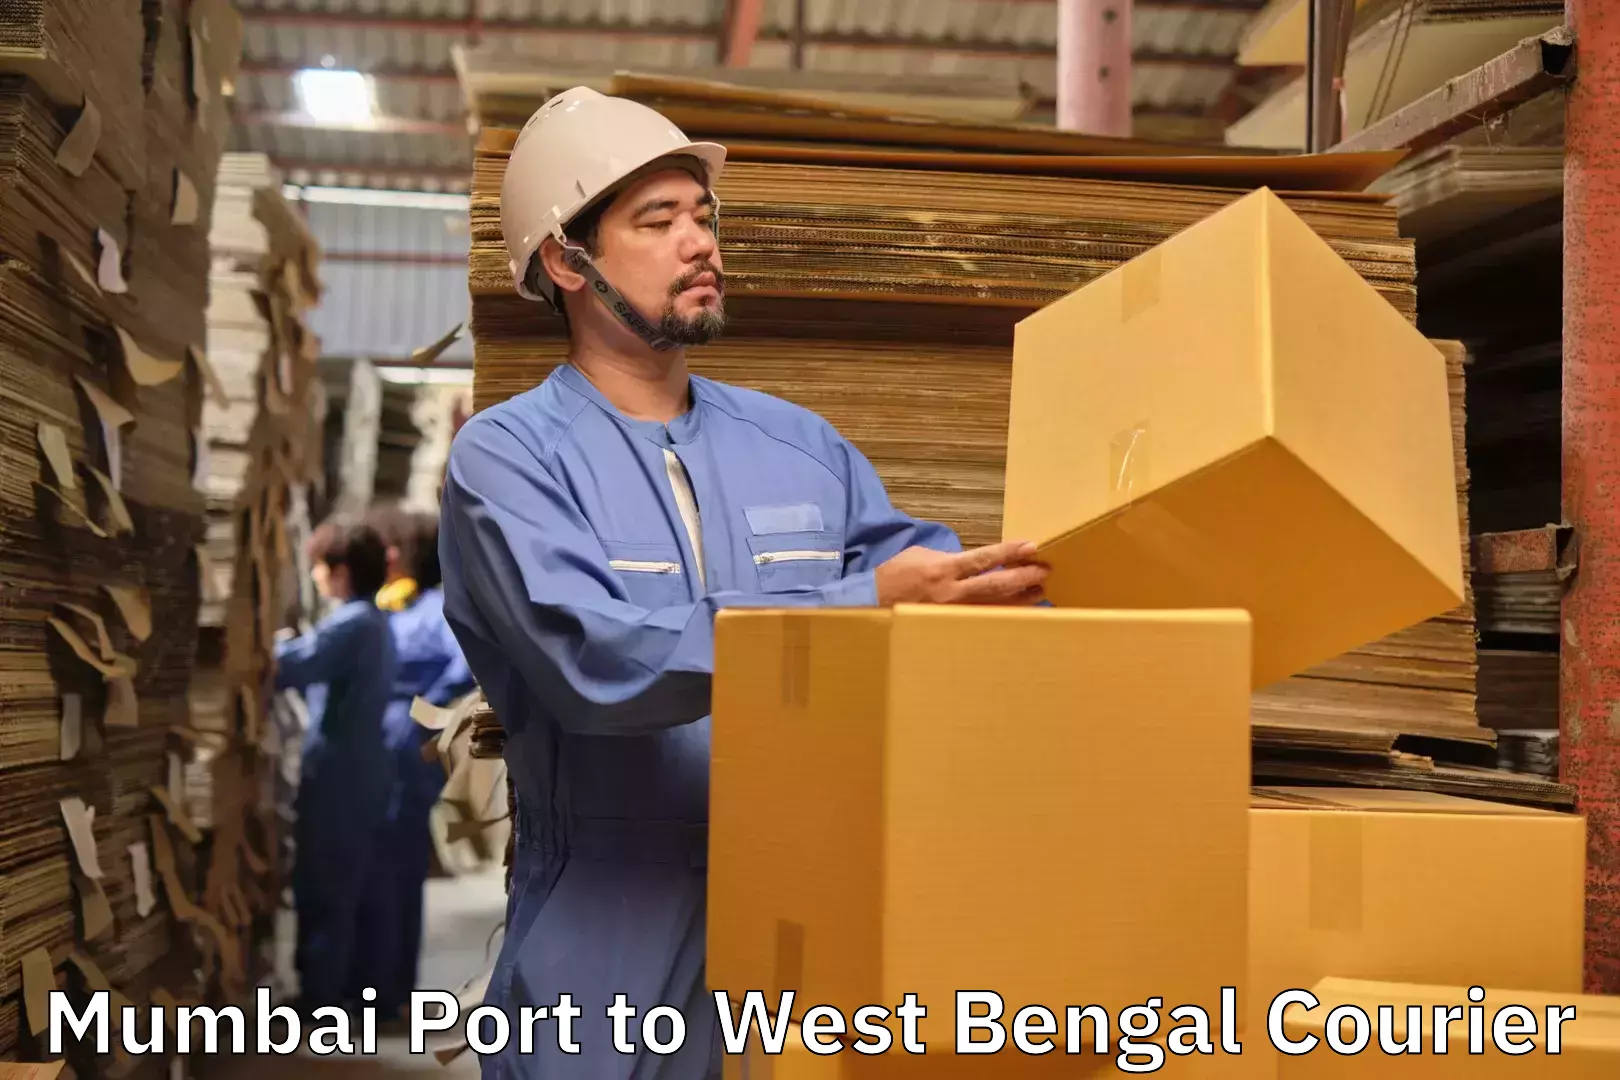 Door-to-door baggage service Mumbai Port to West Bengal